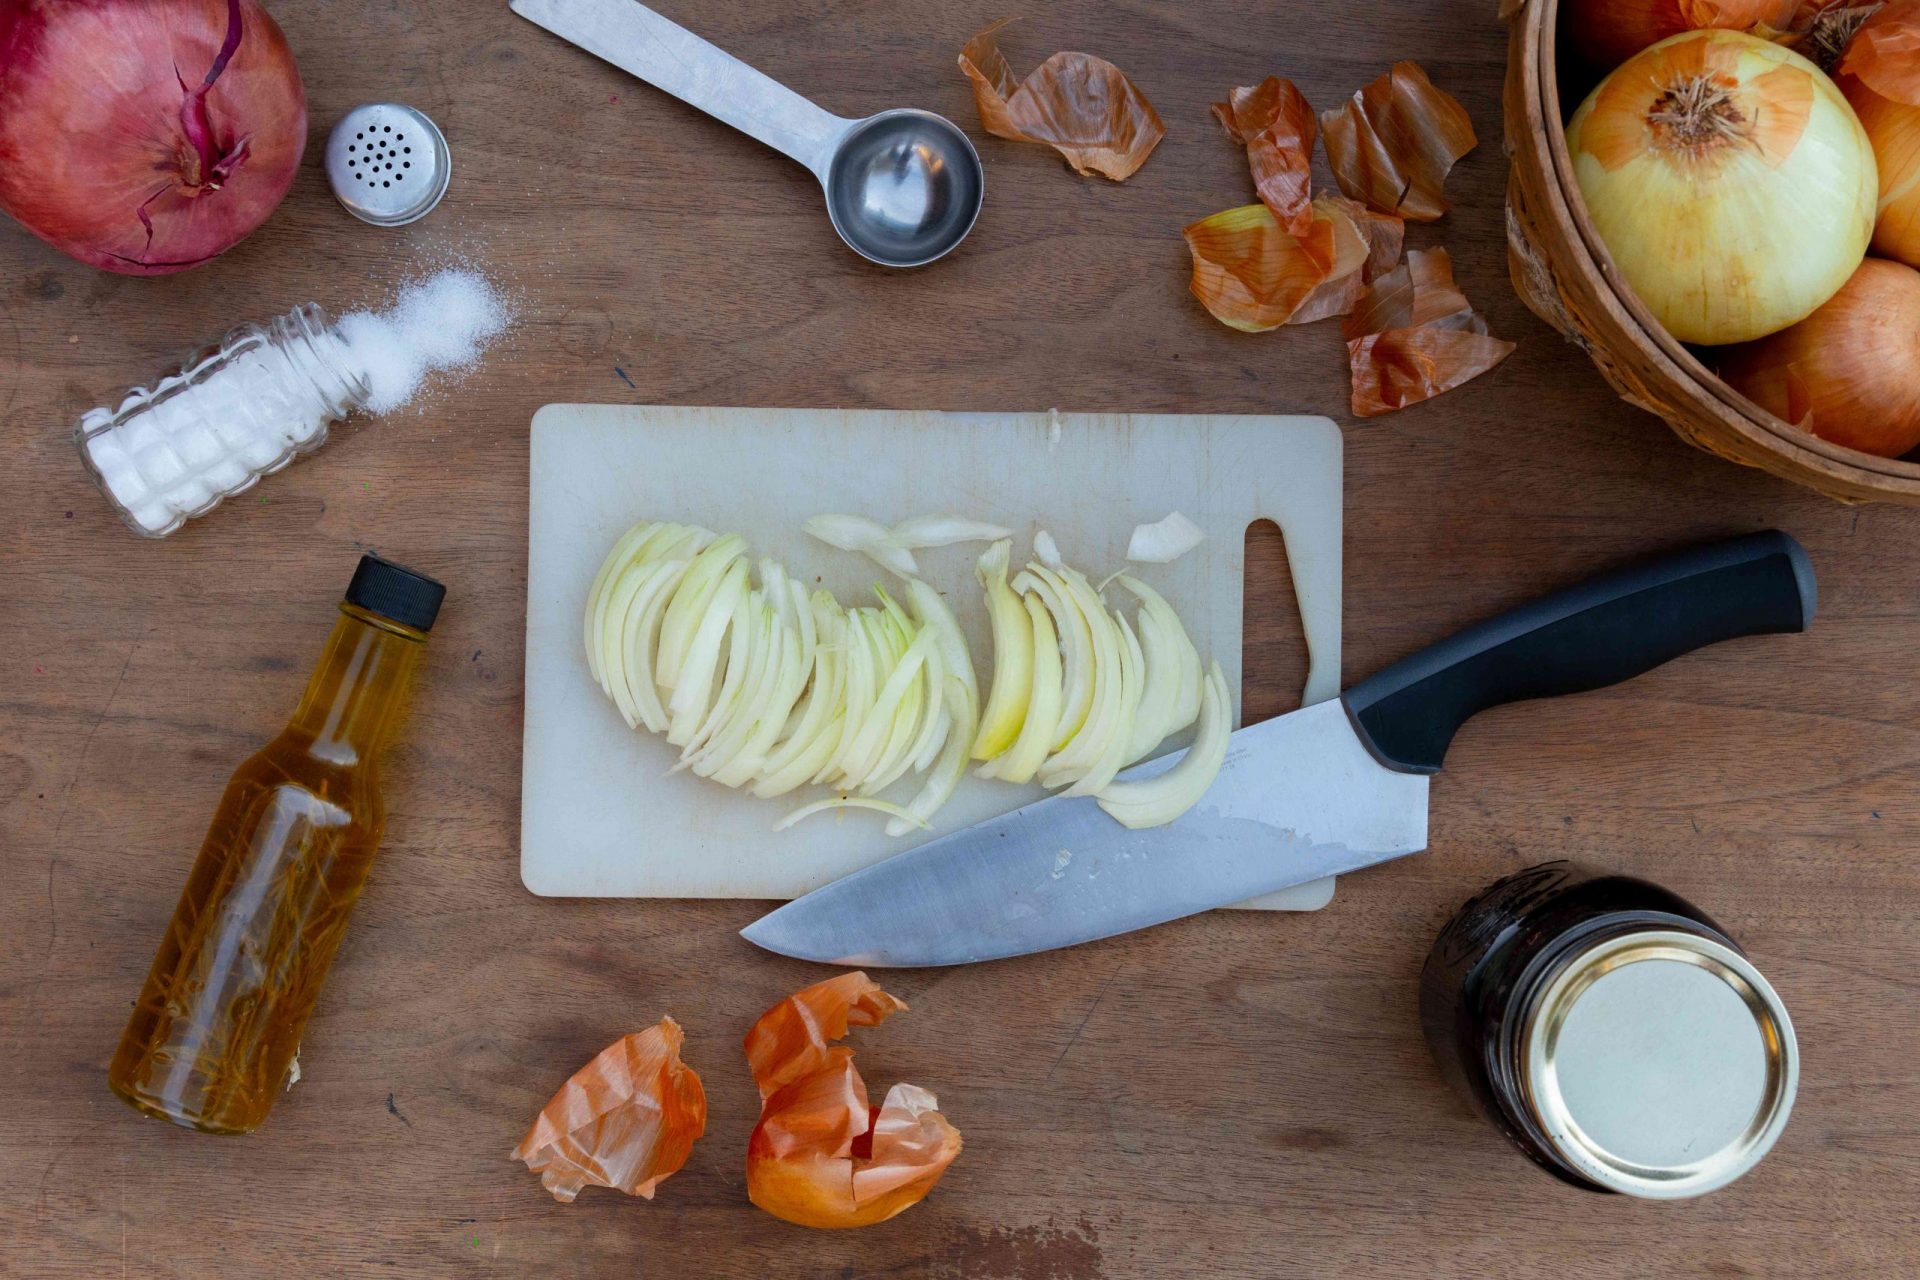 cortando cebollas en una tabla con otros ingredientes alrededor